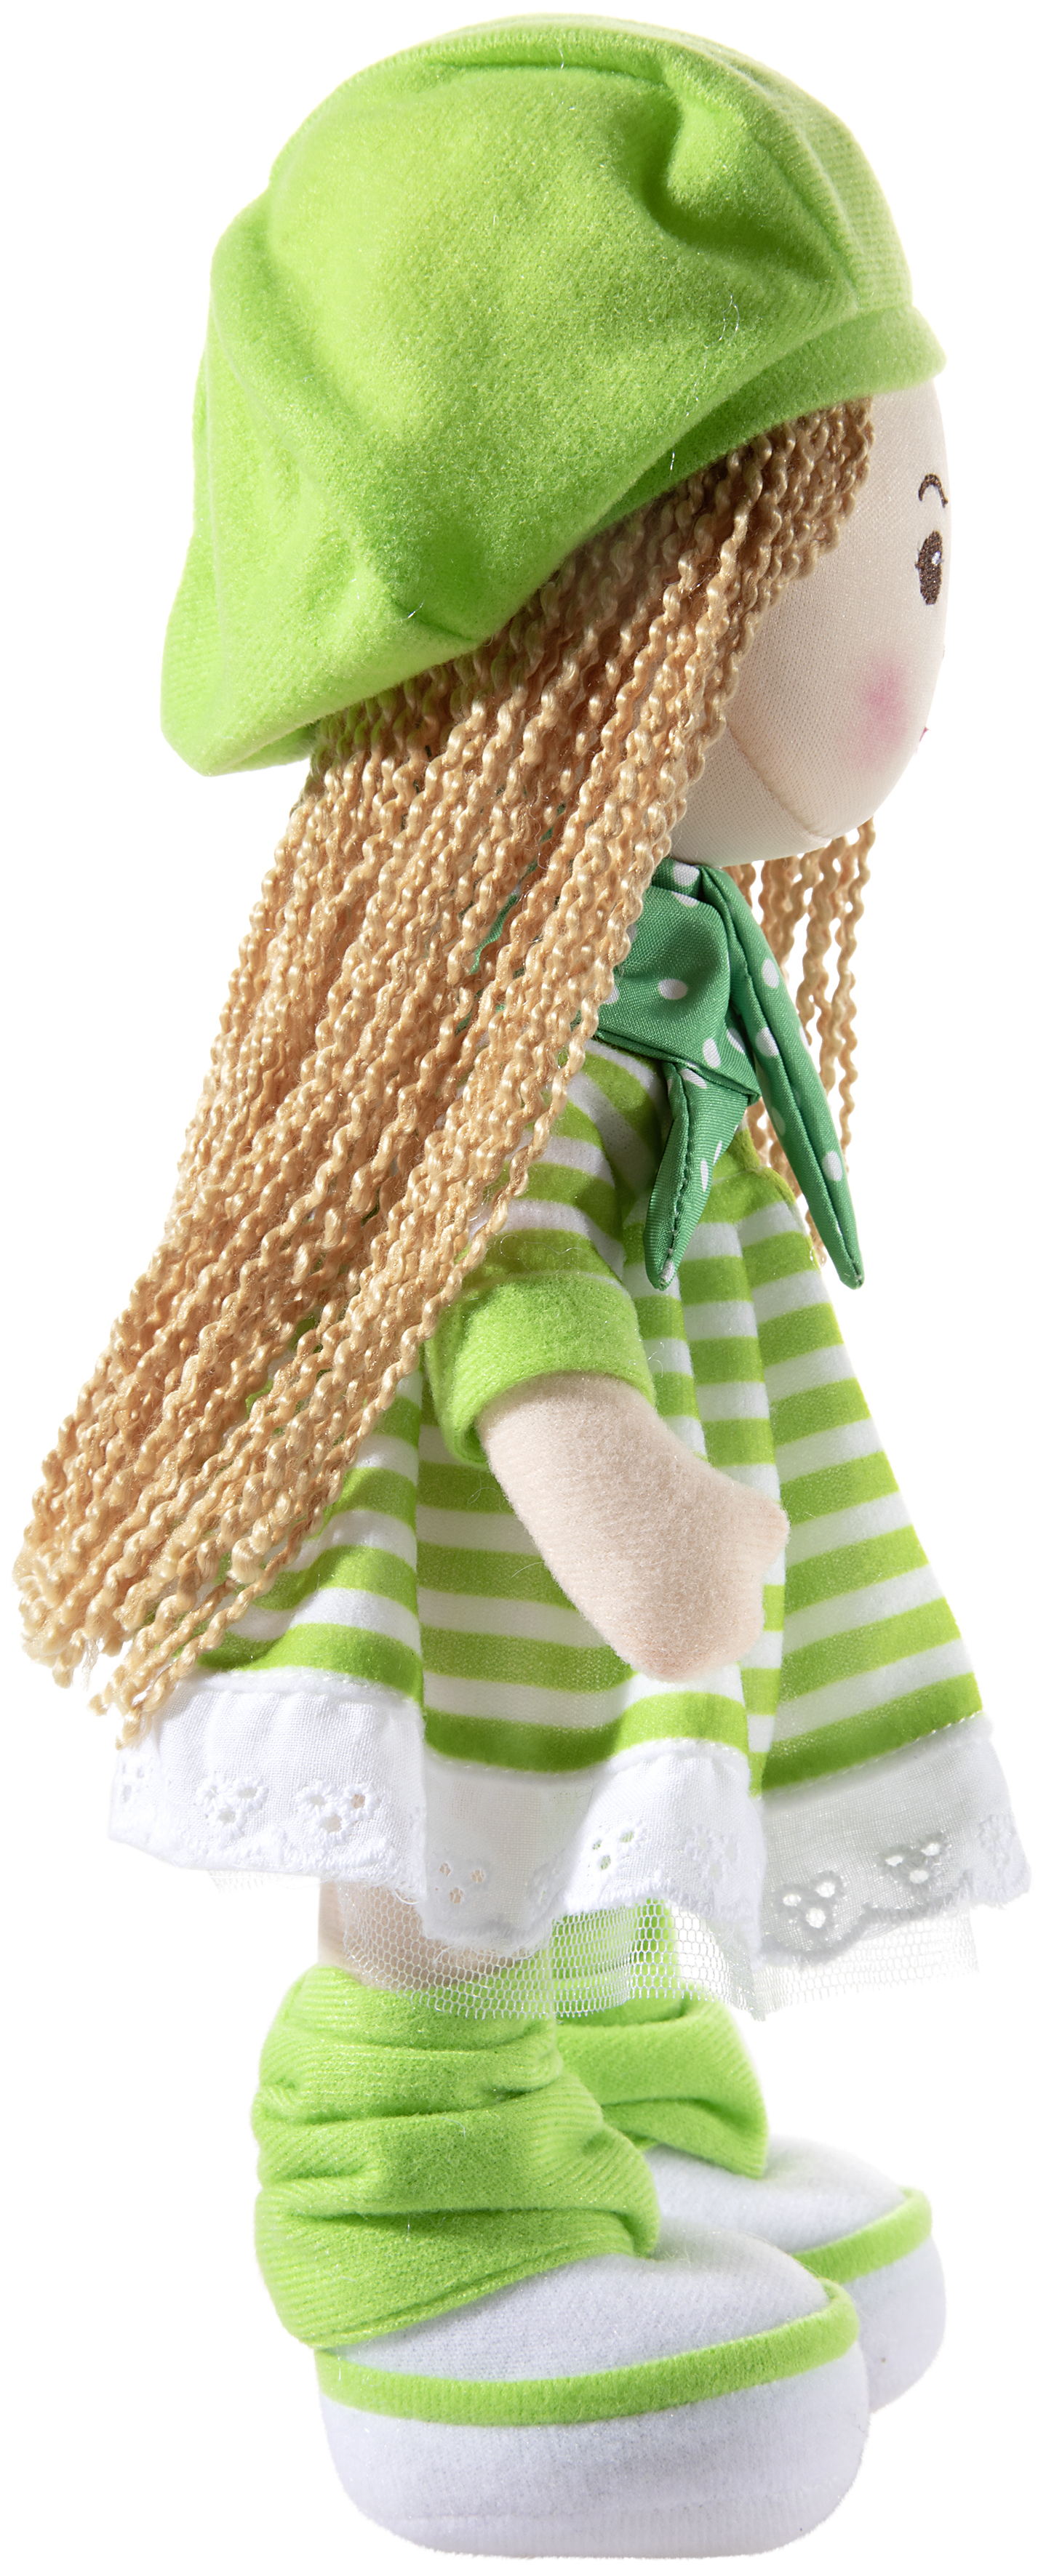 Heunec Poupetta Käferkind mit blonden Haaren, grüner Mütze und grün-weiß gestreiftem Kleidchen seitlich